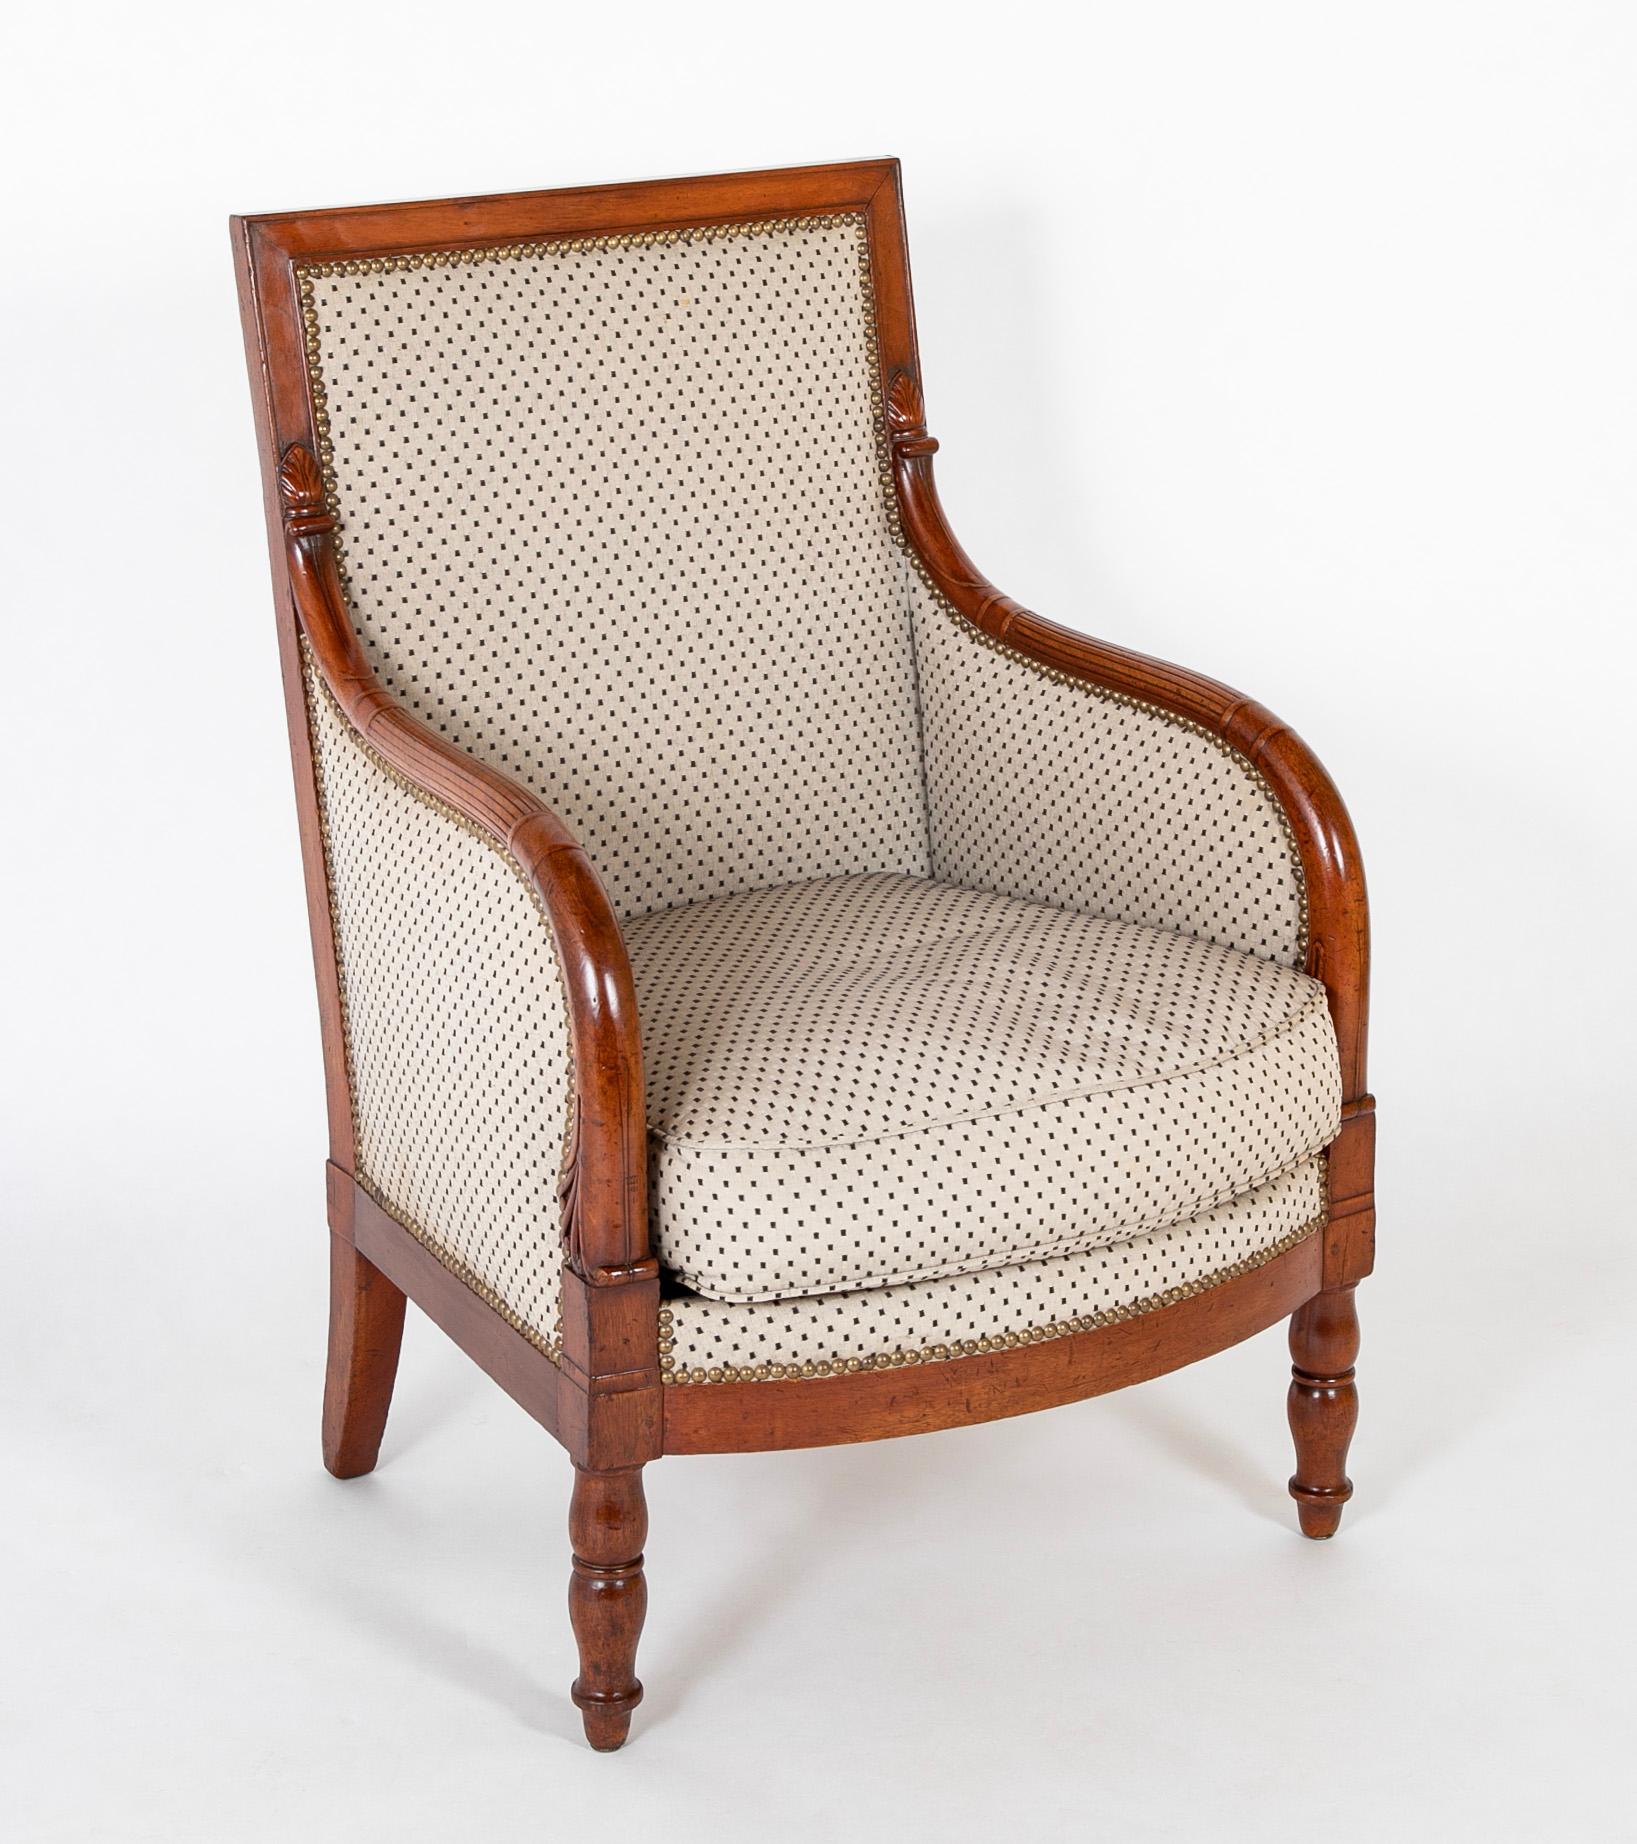 Dieses Paar geräumiger, perfekt entworfener und ausgeführter Stühle wurde in der Werkstatt von George Jacob und seinem Sohn Francois während des Empire in ihrer Pariser Werkstatt in der Rue Meslee hergestellt.  Die Jacobs waren während des Endes des